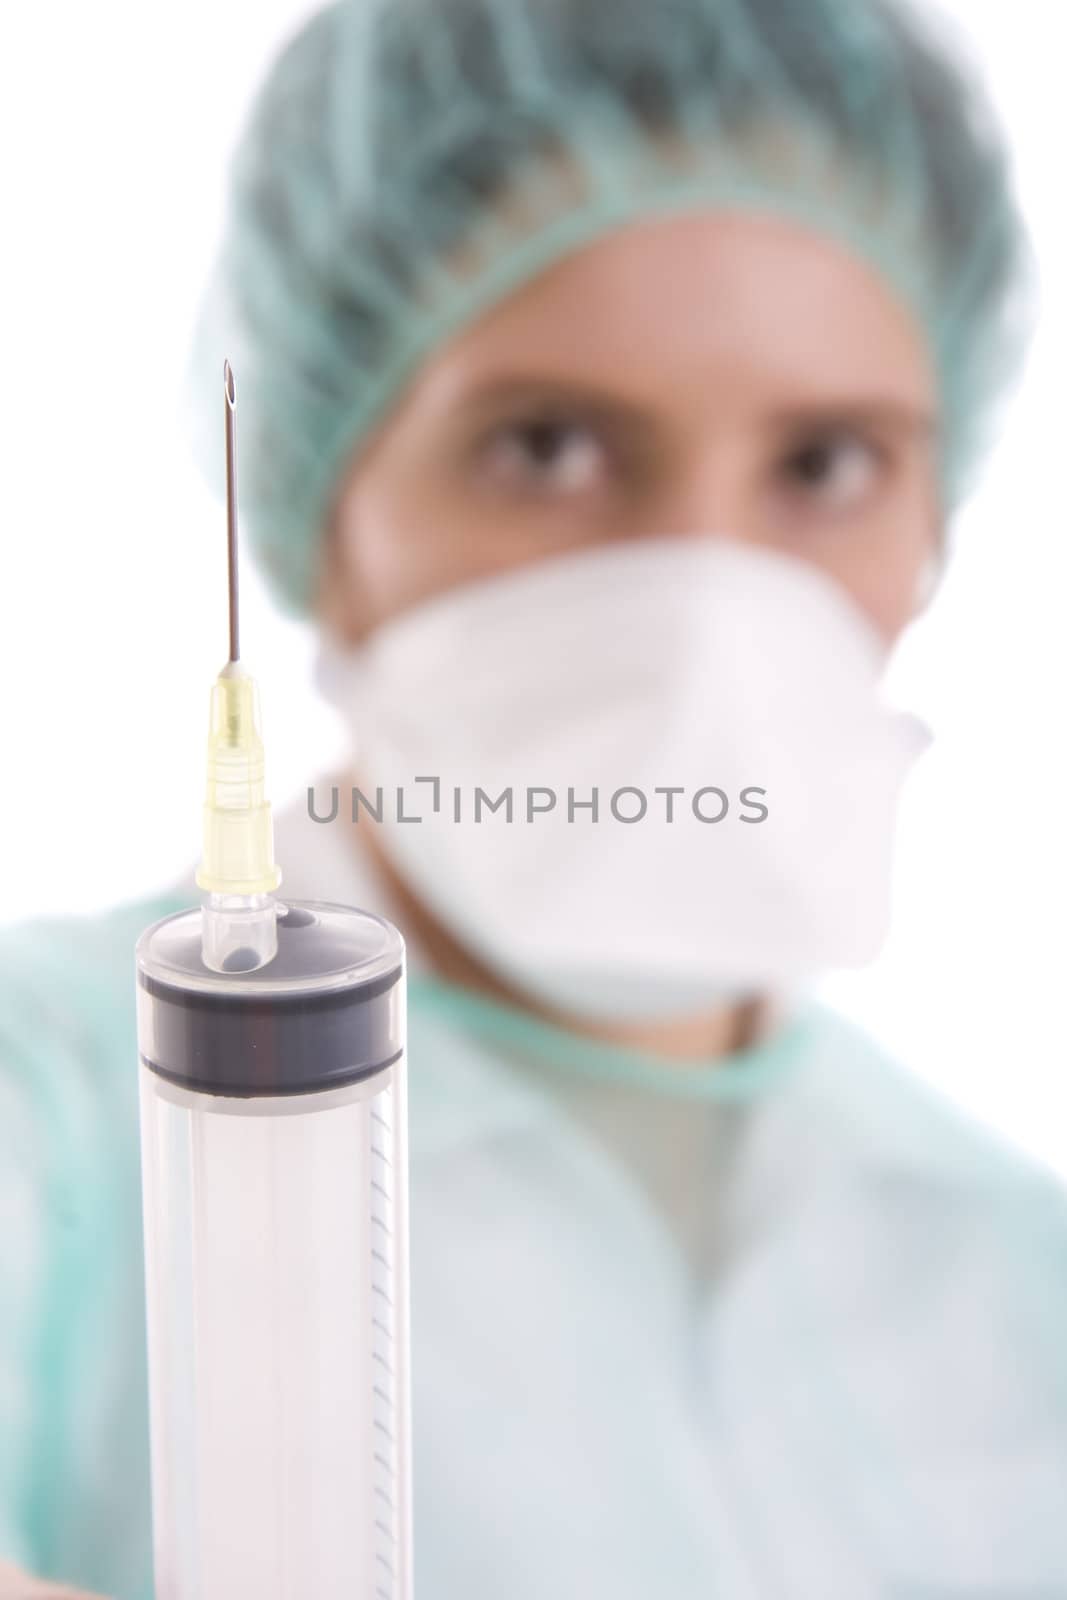 doctor holding syringe on white background
